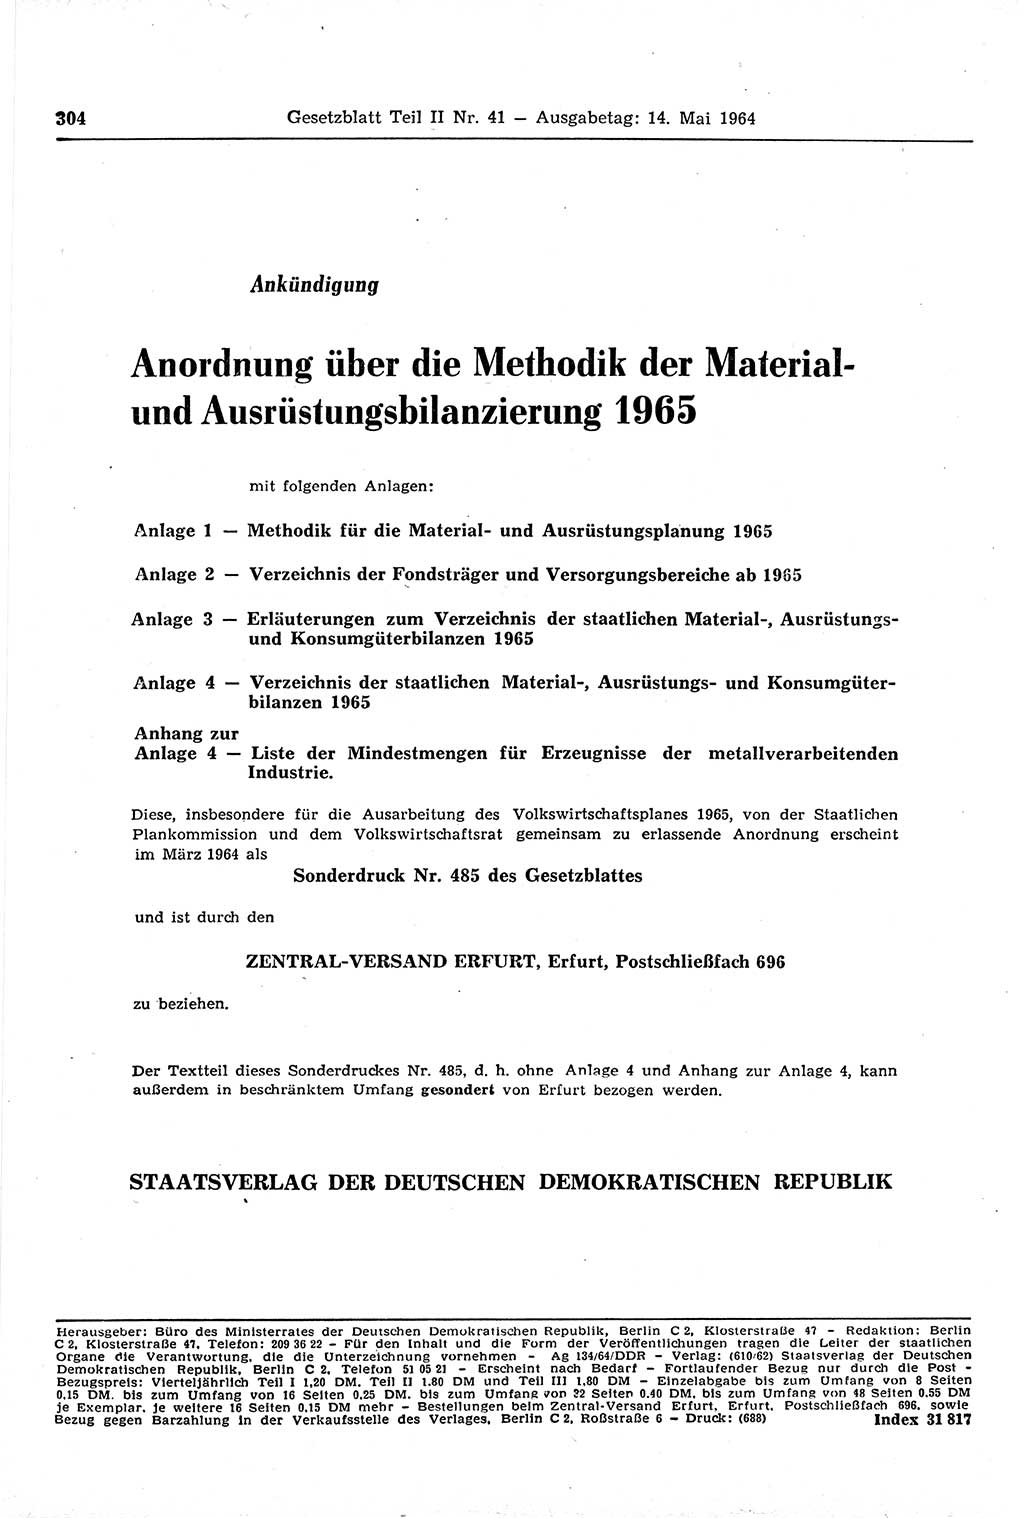 Gesetzblatt (GBl.) der Deutschen Demokratischen Republik (DDR) Teil ⅠⅠ 1964, Seite 304 (GBl. DDR ⅠⅠ 1964, S. 304)